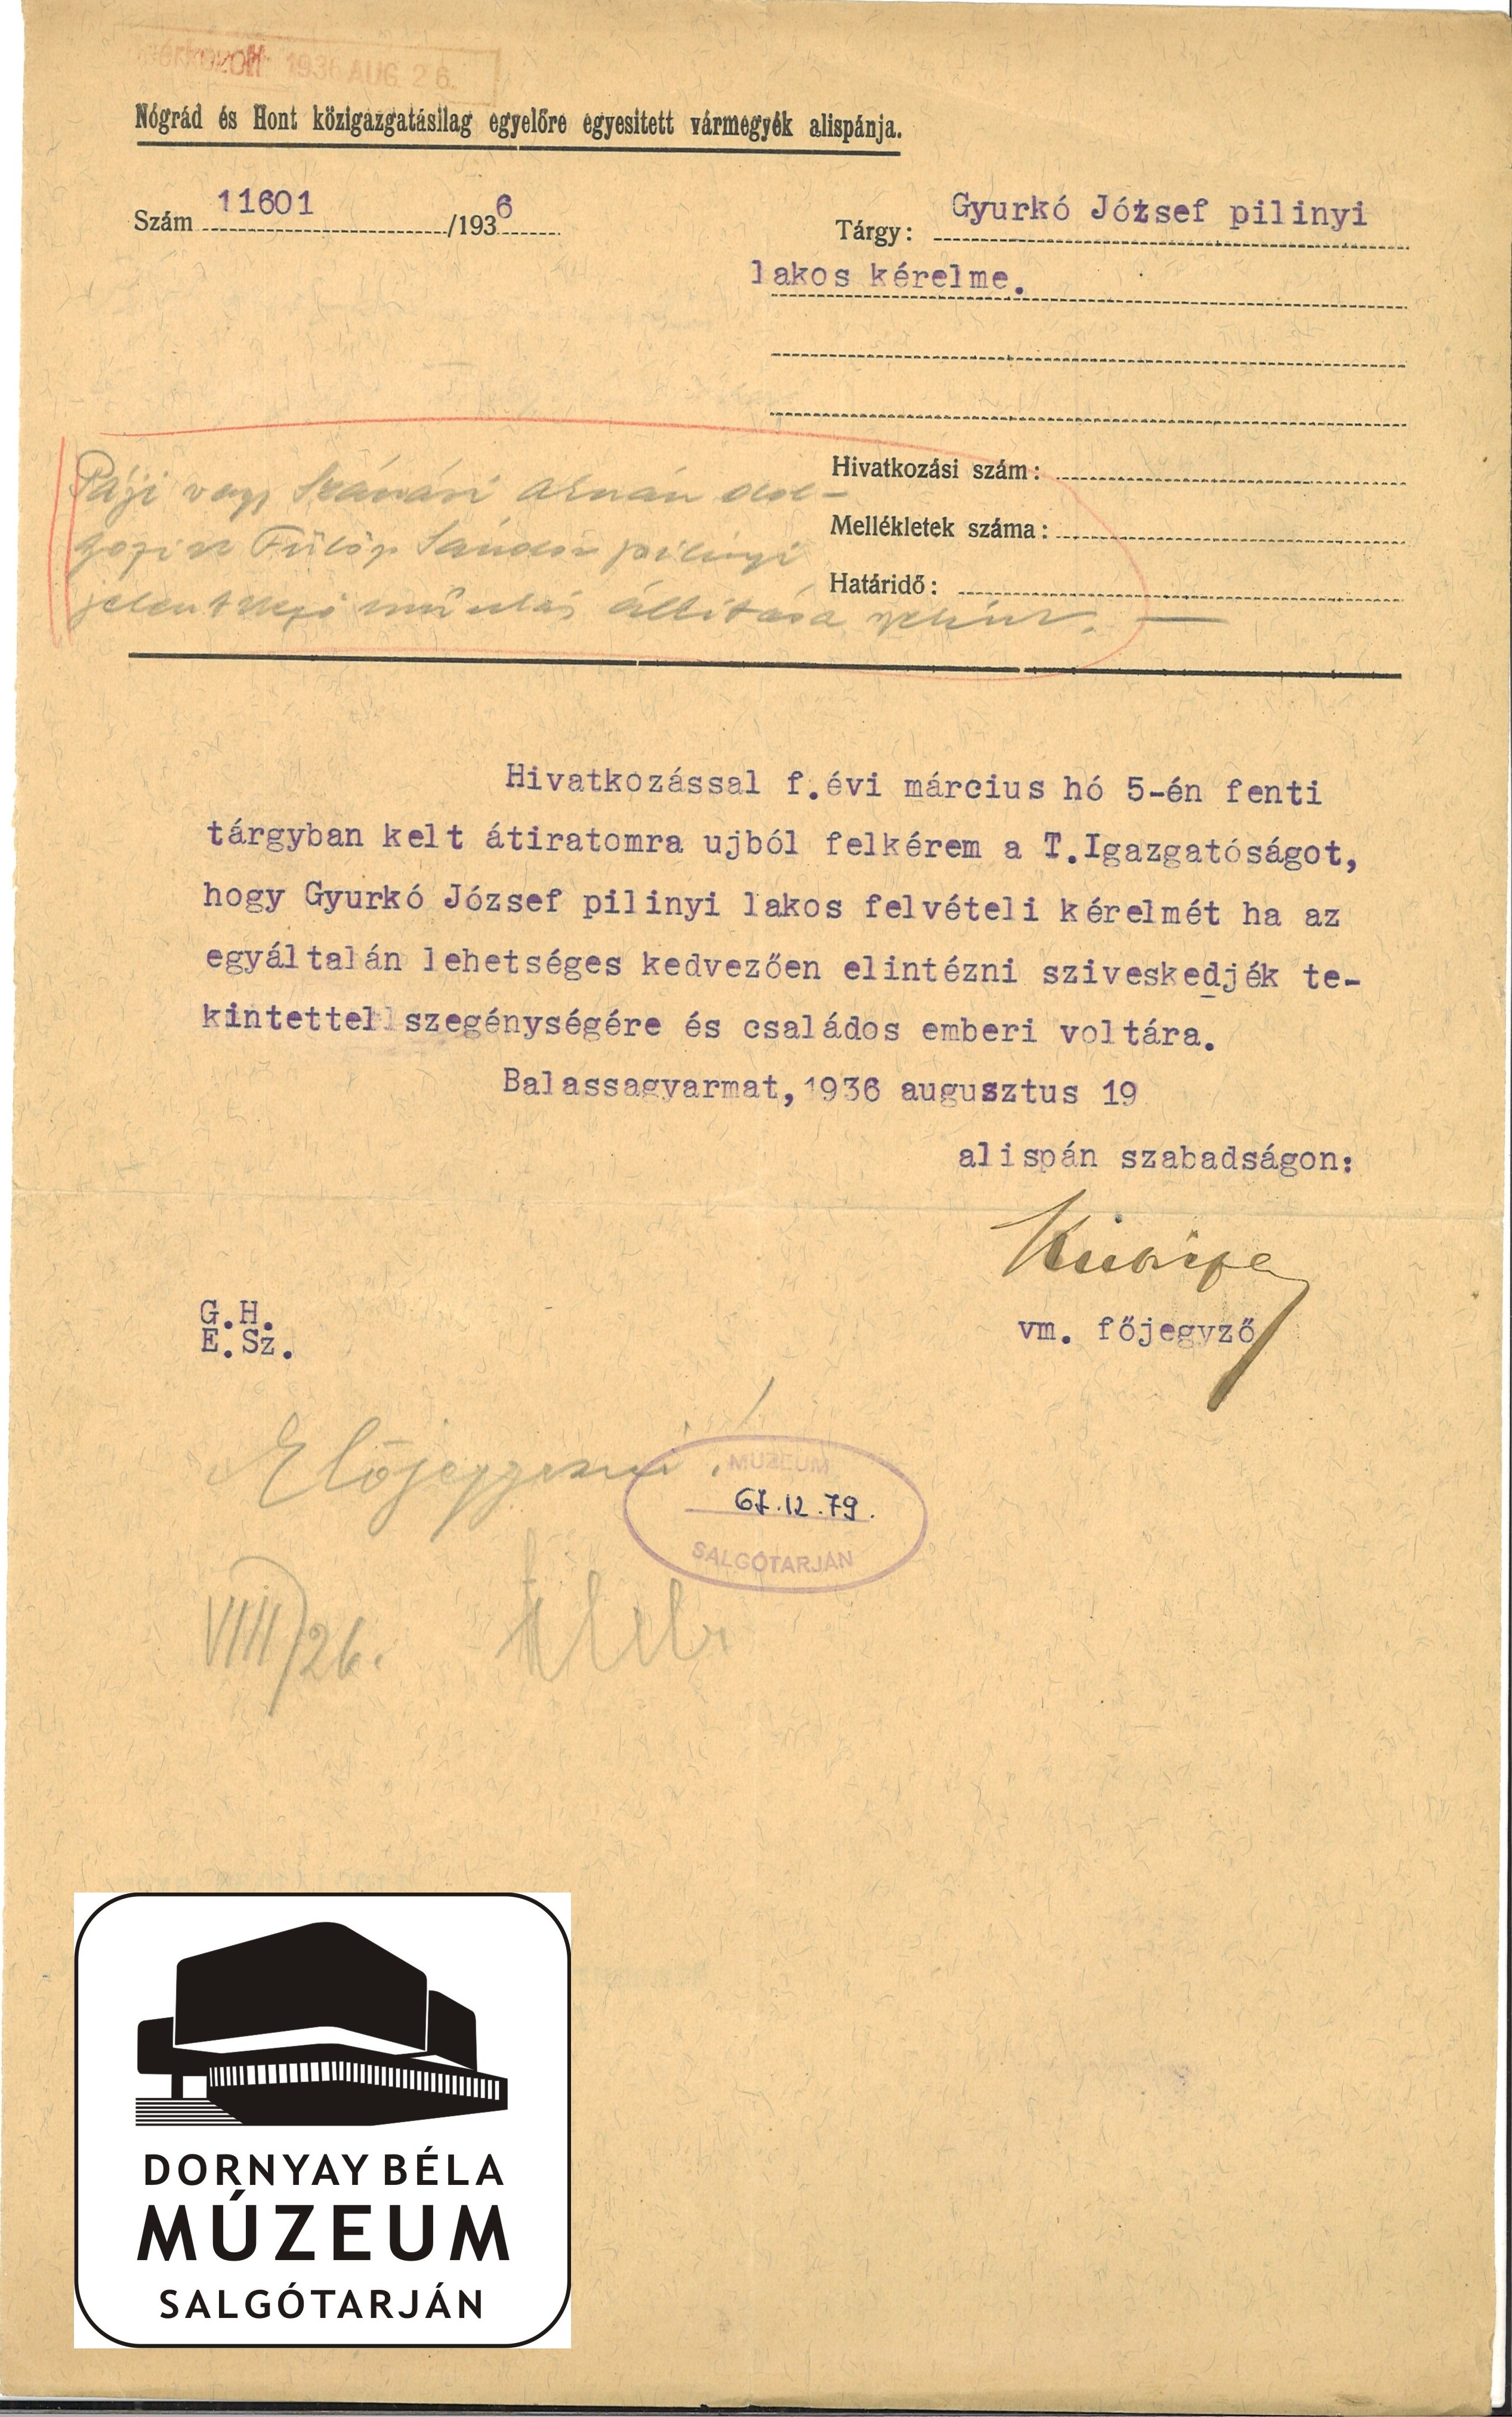 Gyurkó József pilinyi lakos acélgyári alkamazott acélgyári alkalmazását kéri a vm. Főjegyző (Dornyay Béla Múzeum, Salgótarján CC BY-NC-SA)